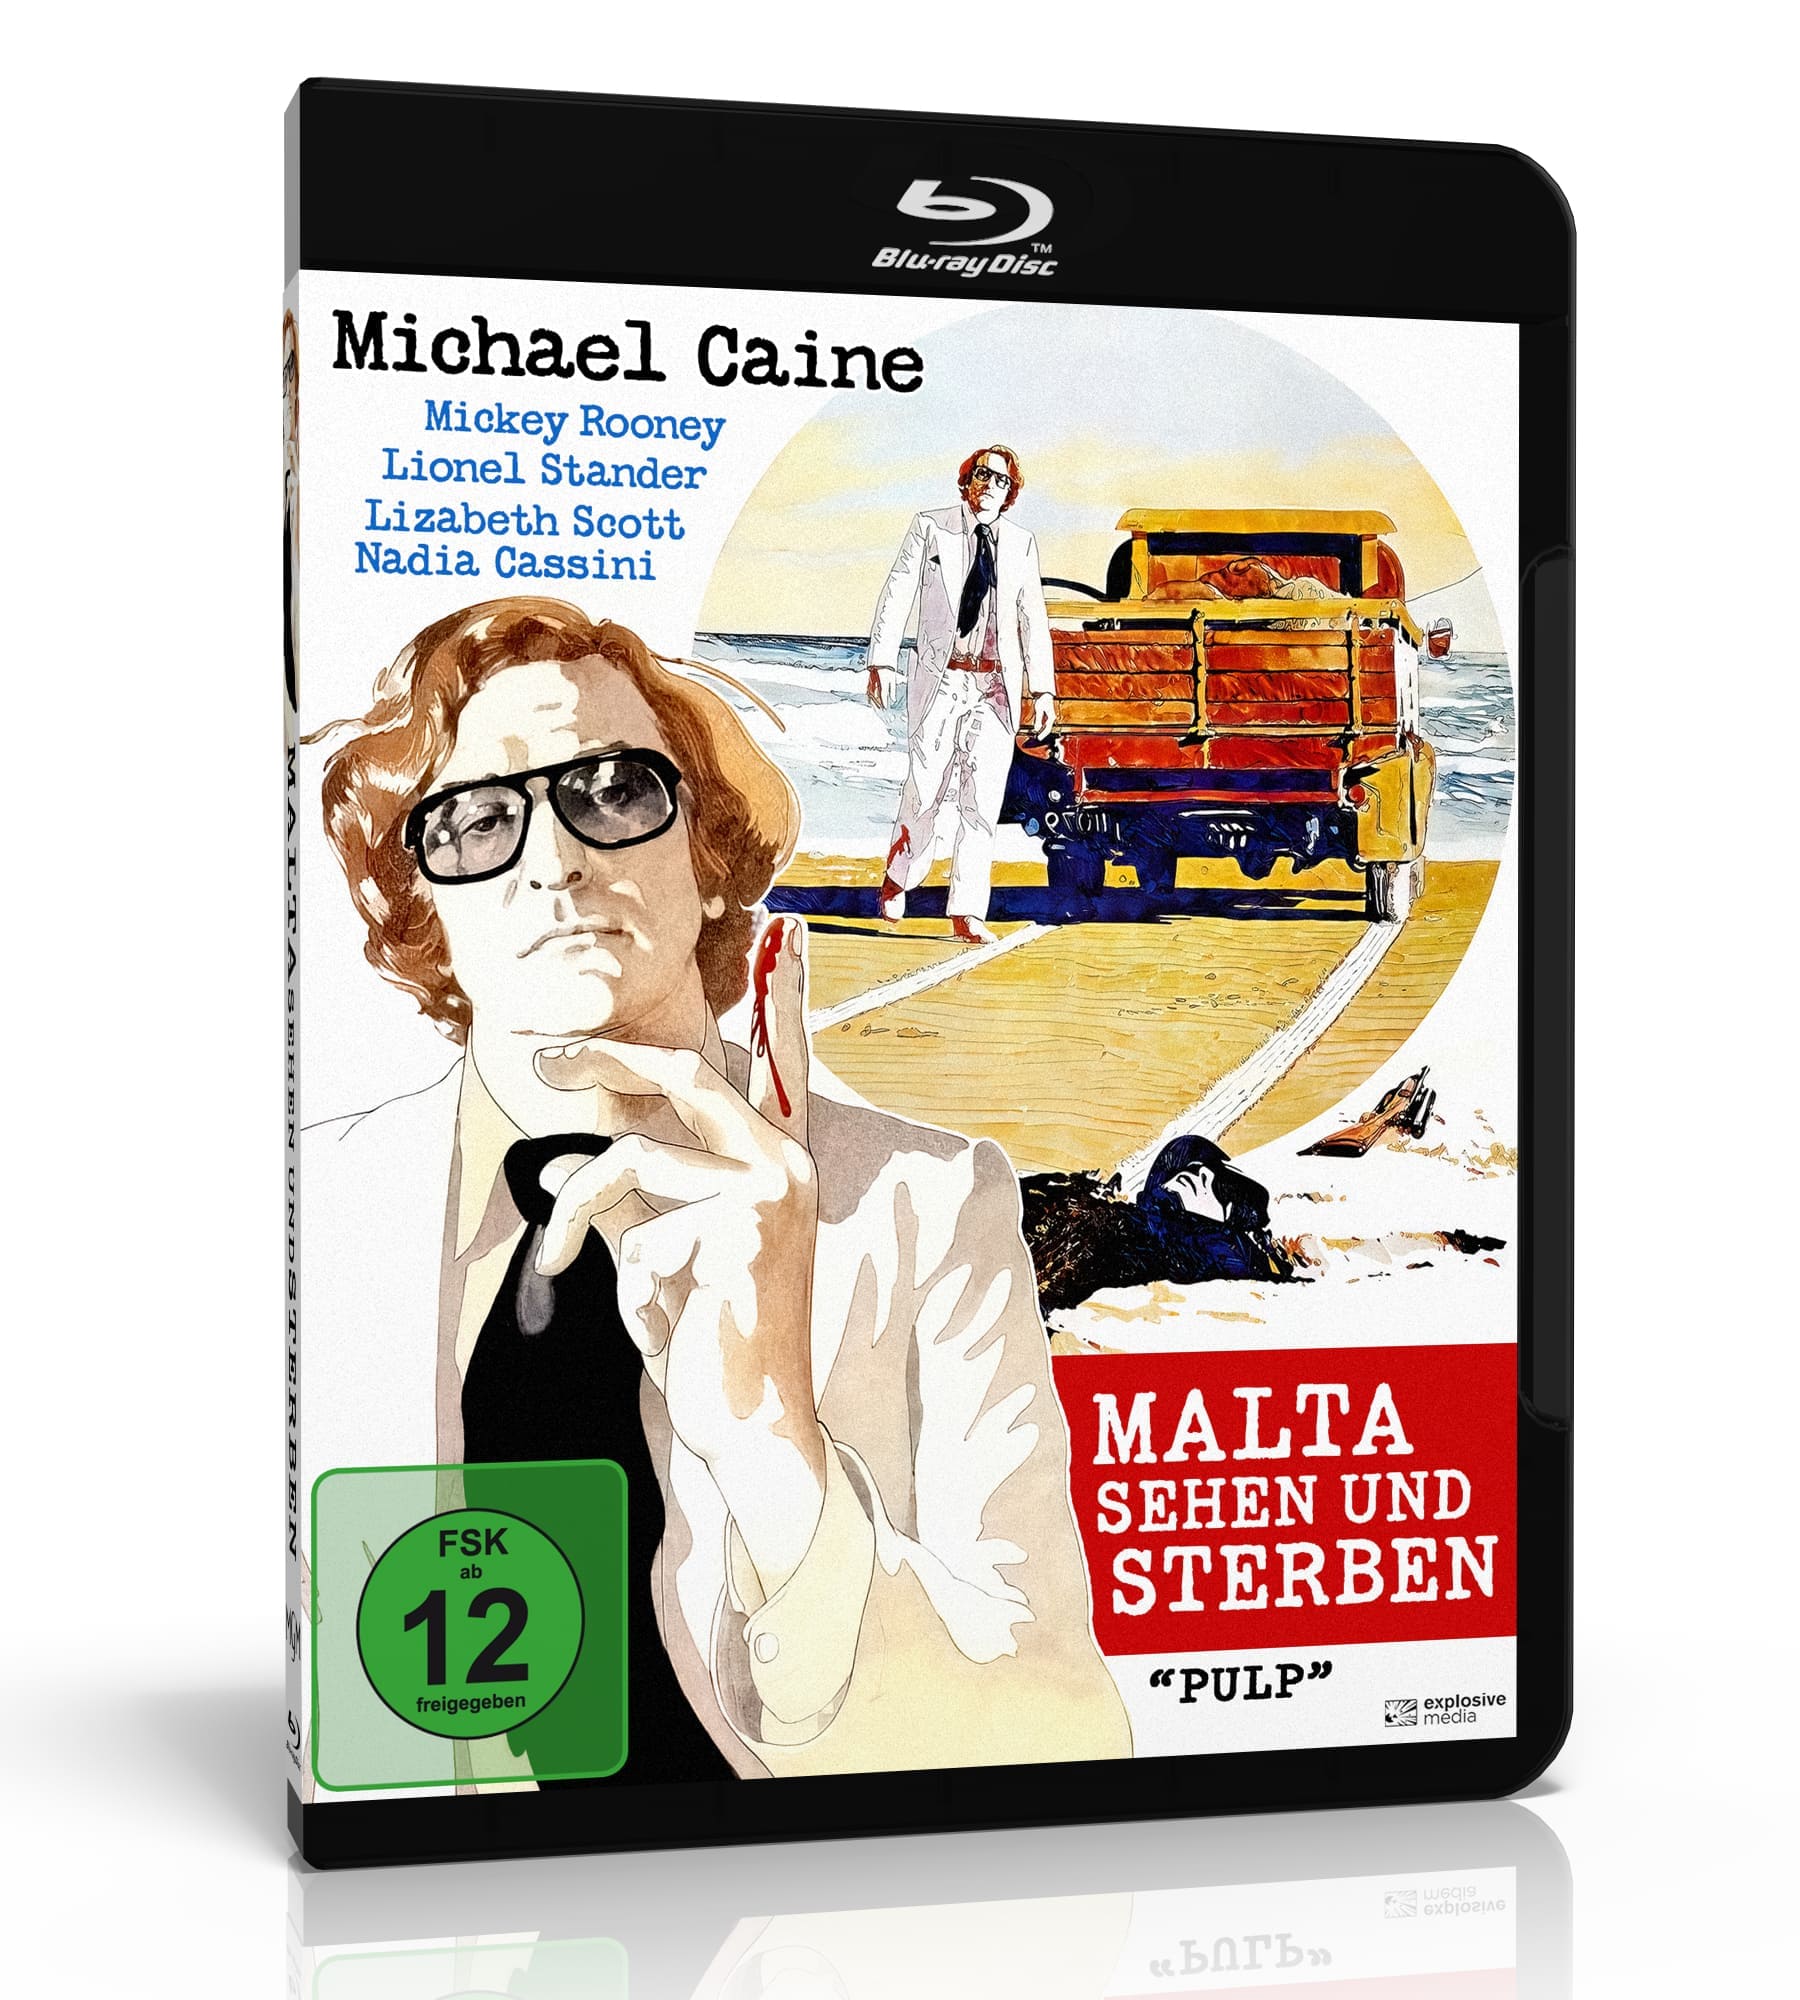 Malta sehen und sterben (Blu-ray) Image 2